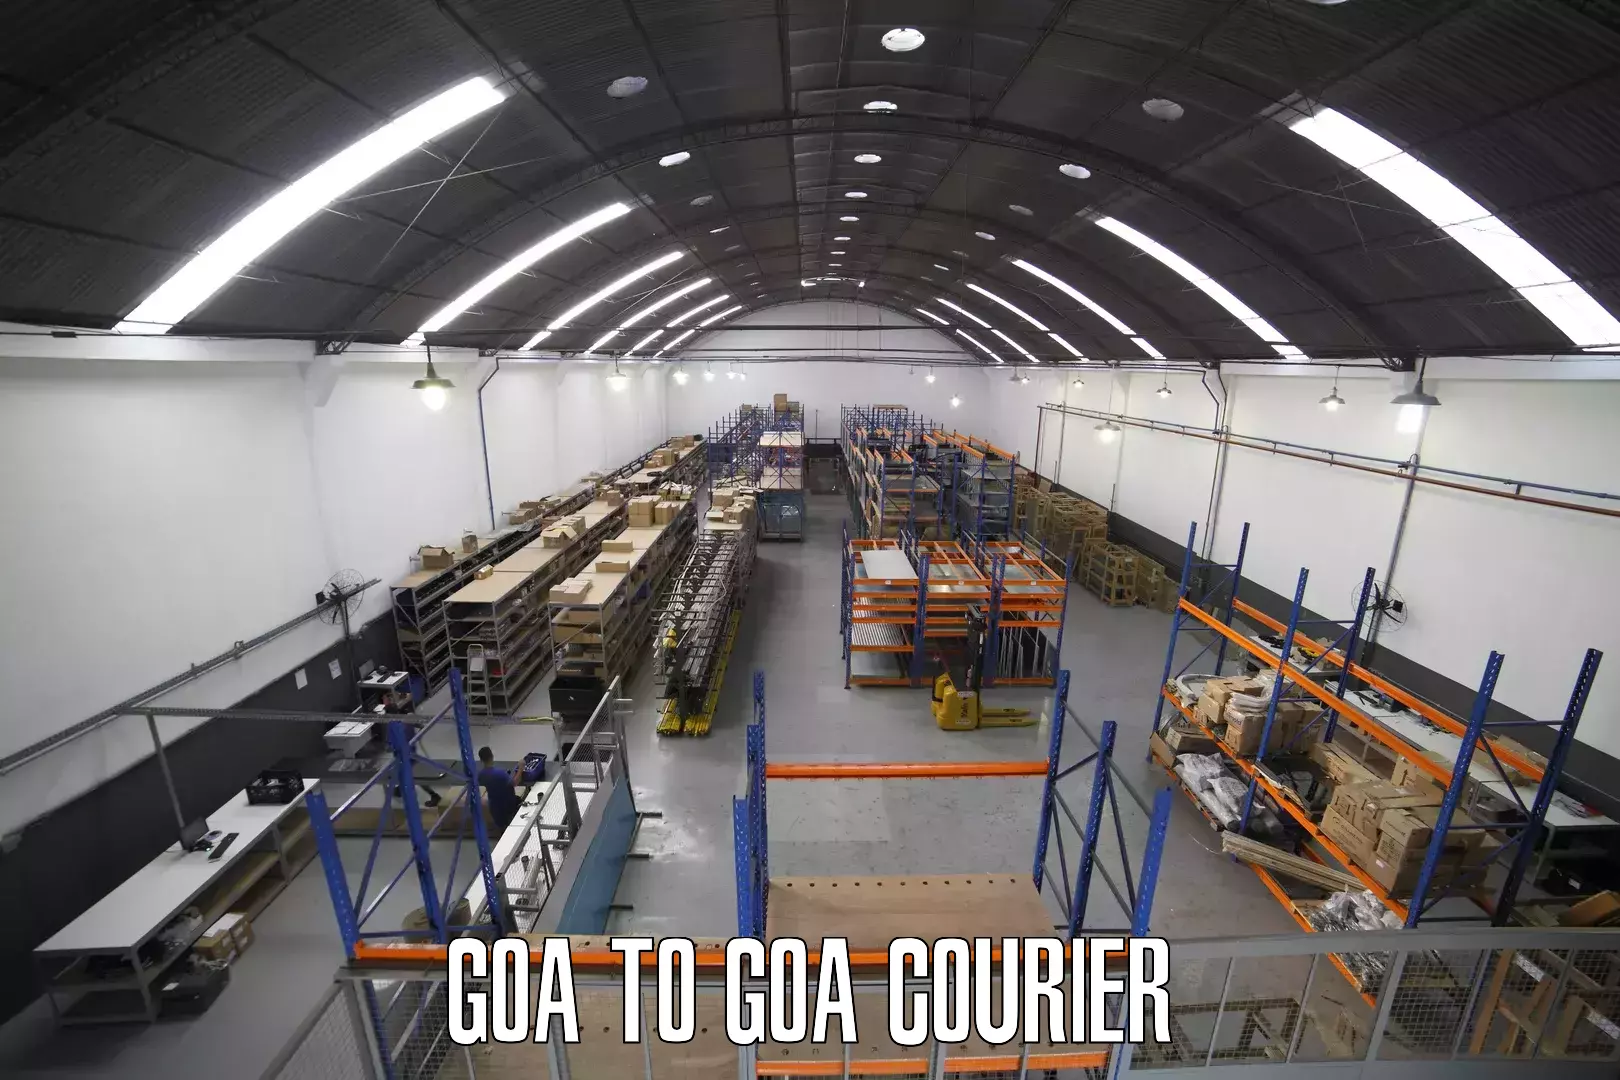 Next-day freight services Goa to Goa